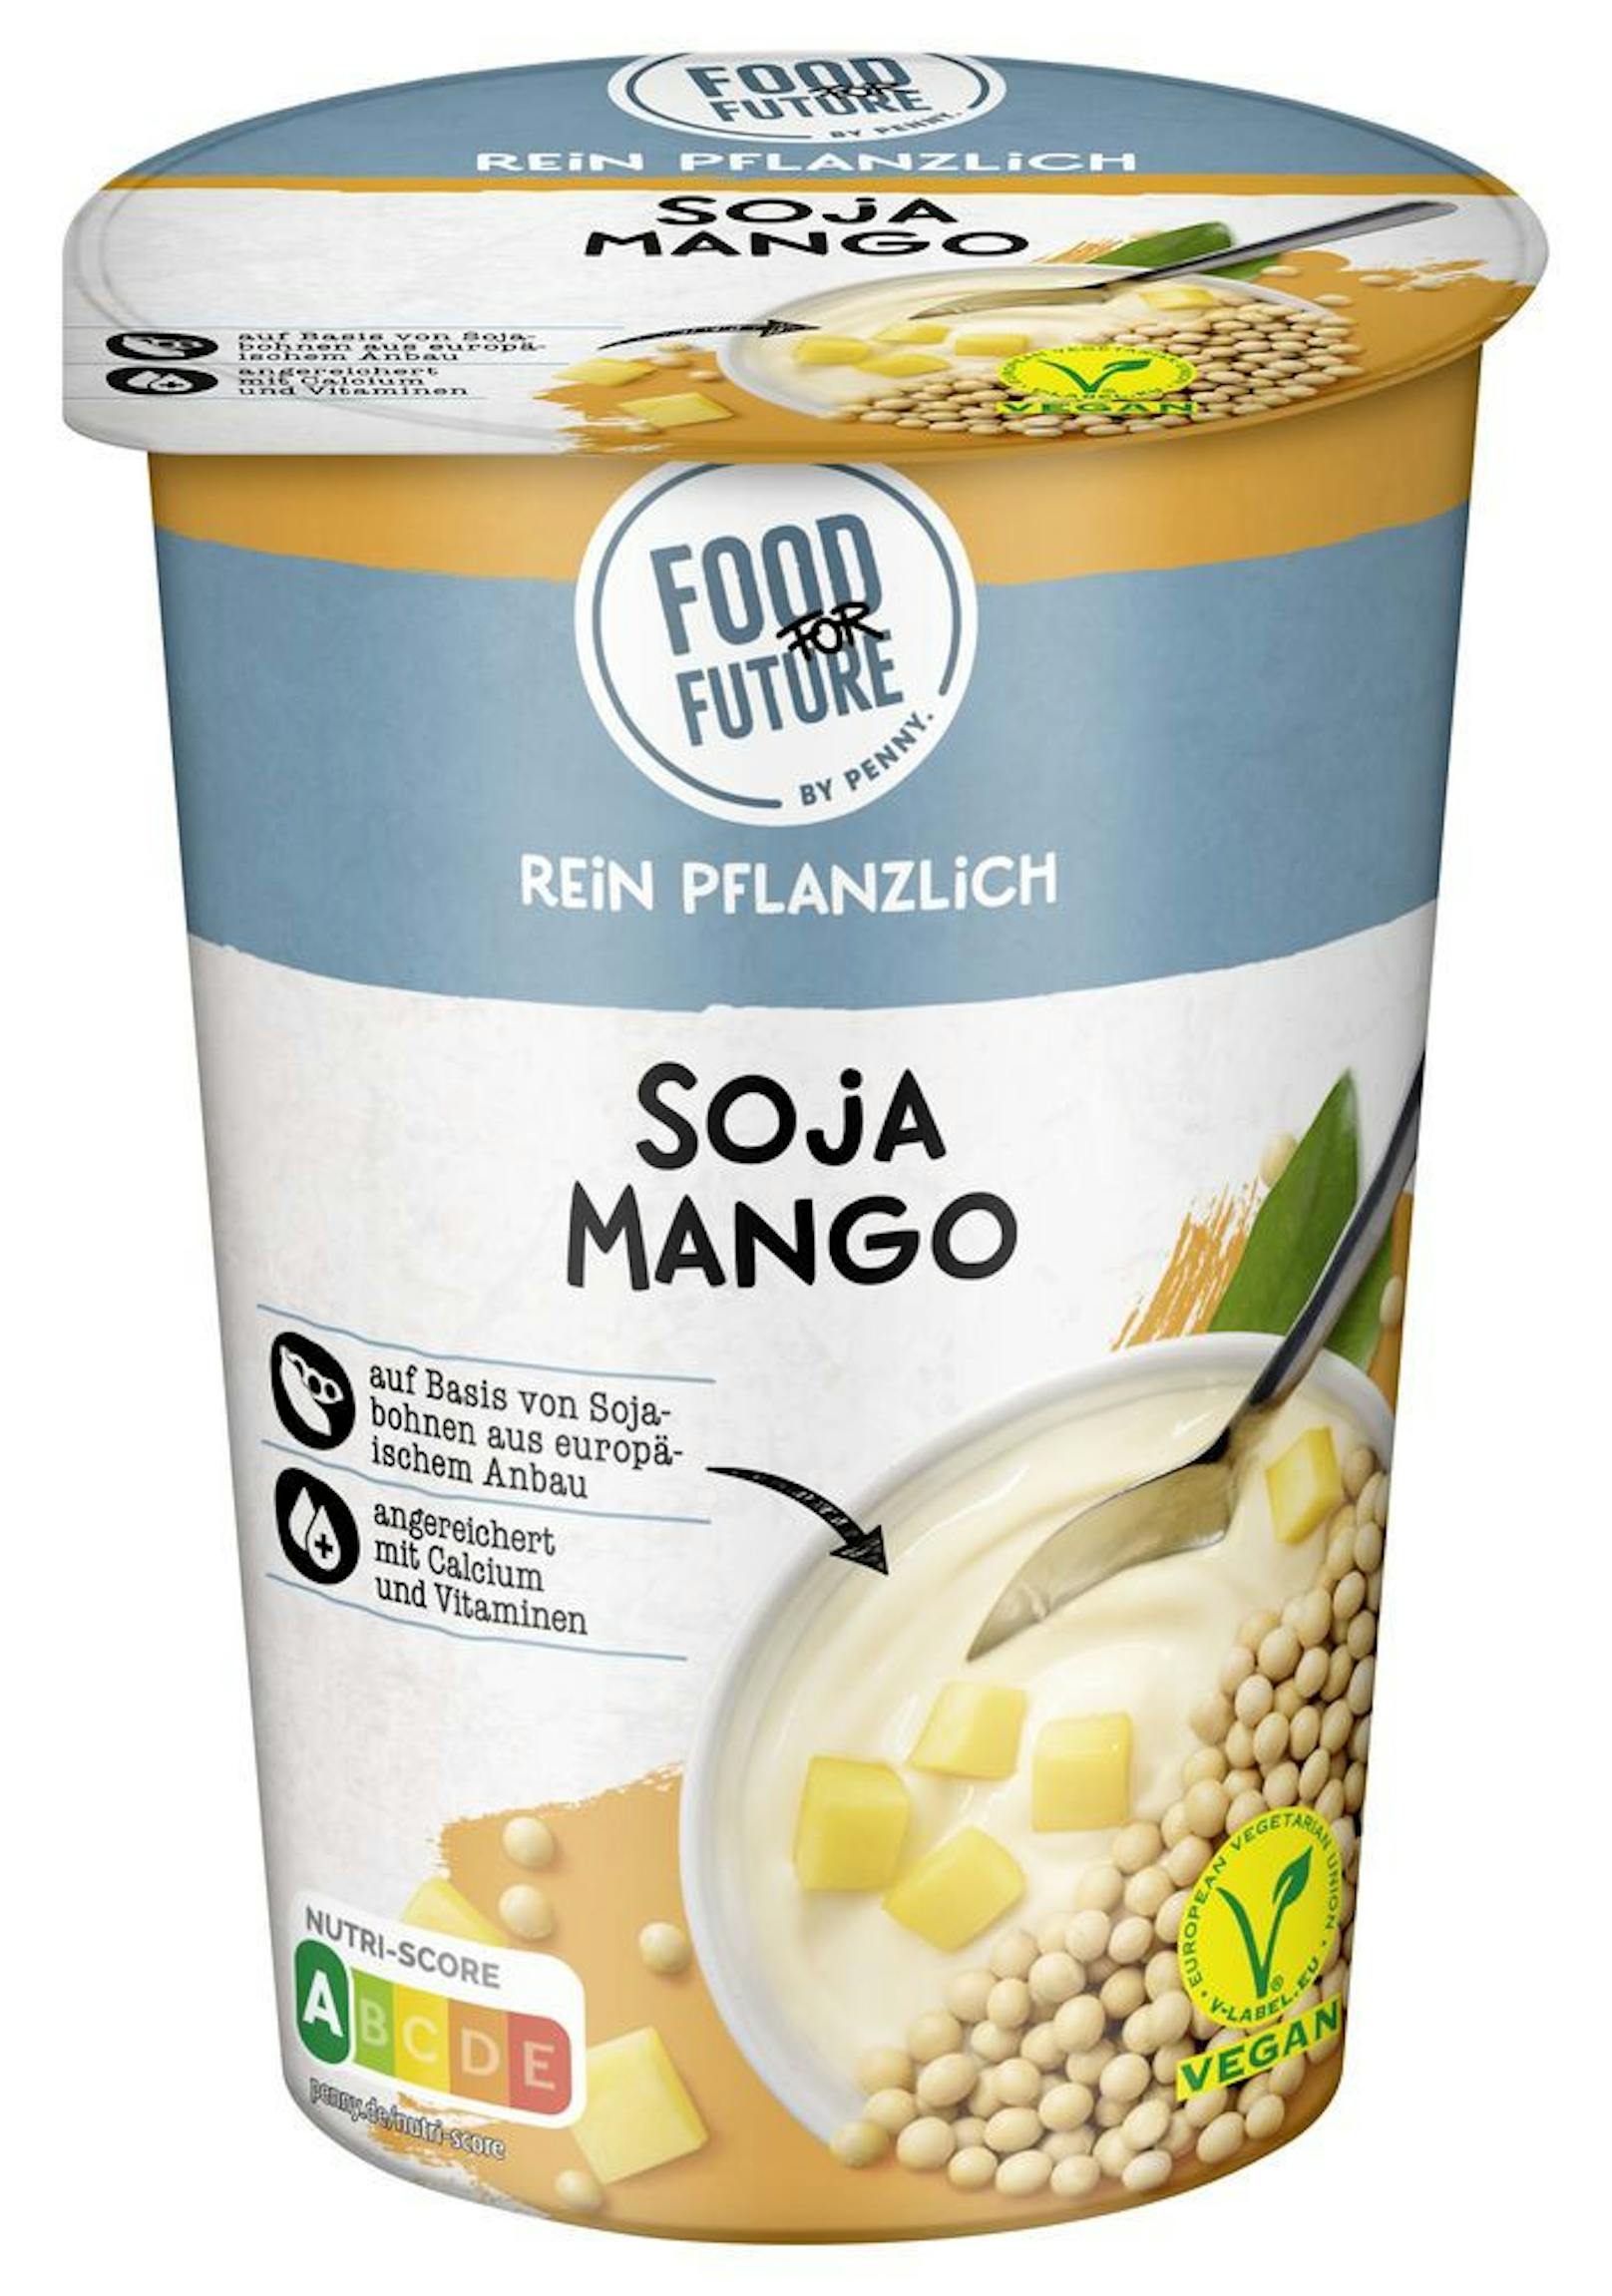 Die "Food For Future" Produkte sind nicht nur mit dem Siegel der Vegan-Blume ausgezeichnet, sondern auch klimaneutral.